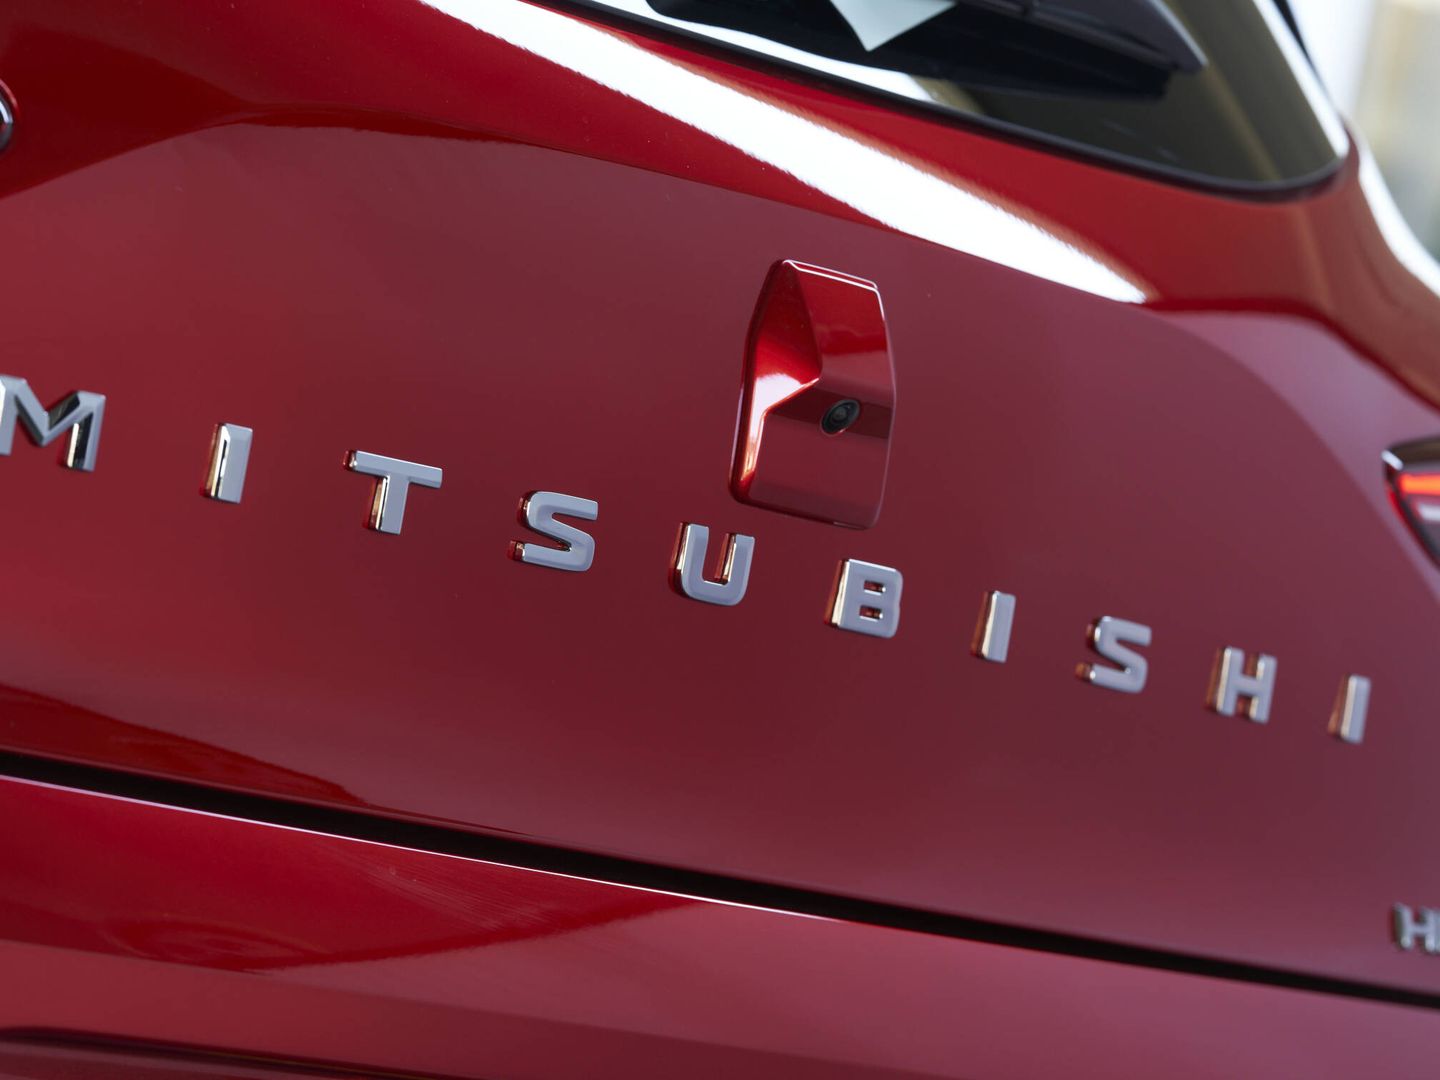 El Clio lleva su nombre en letras en la trasera; mientras el Colt luce Mitsubishi.